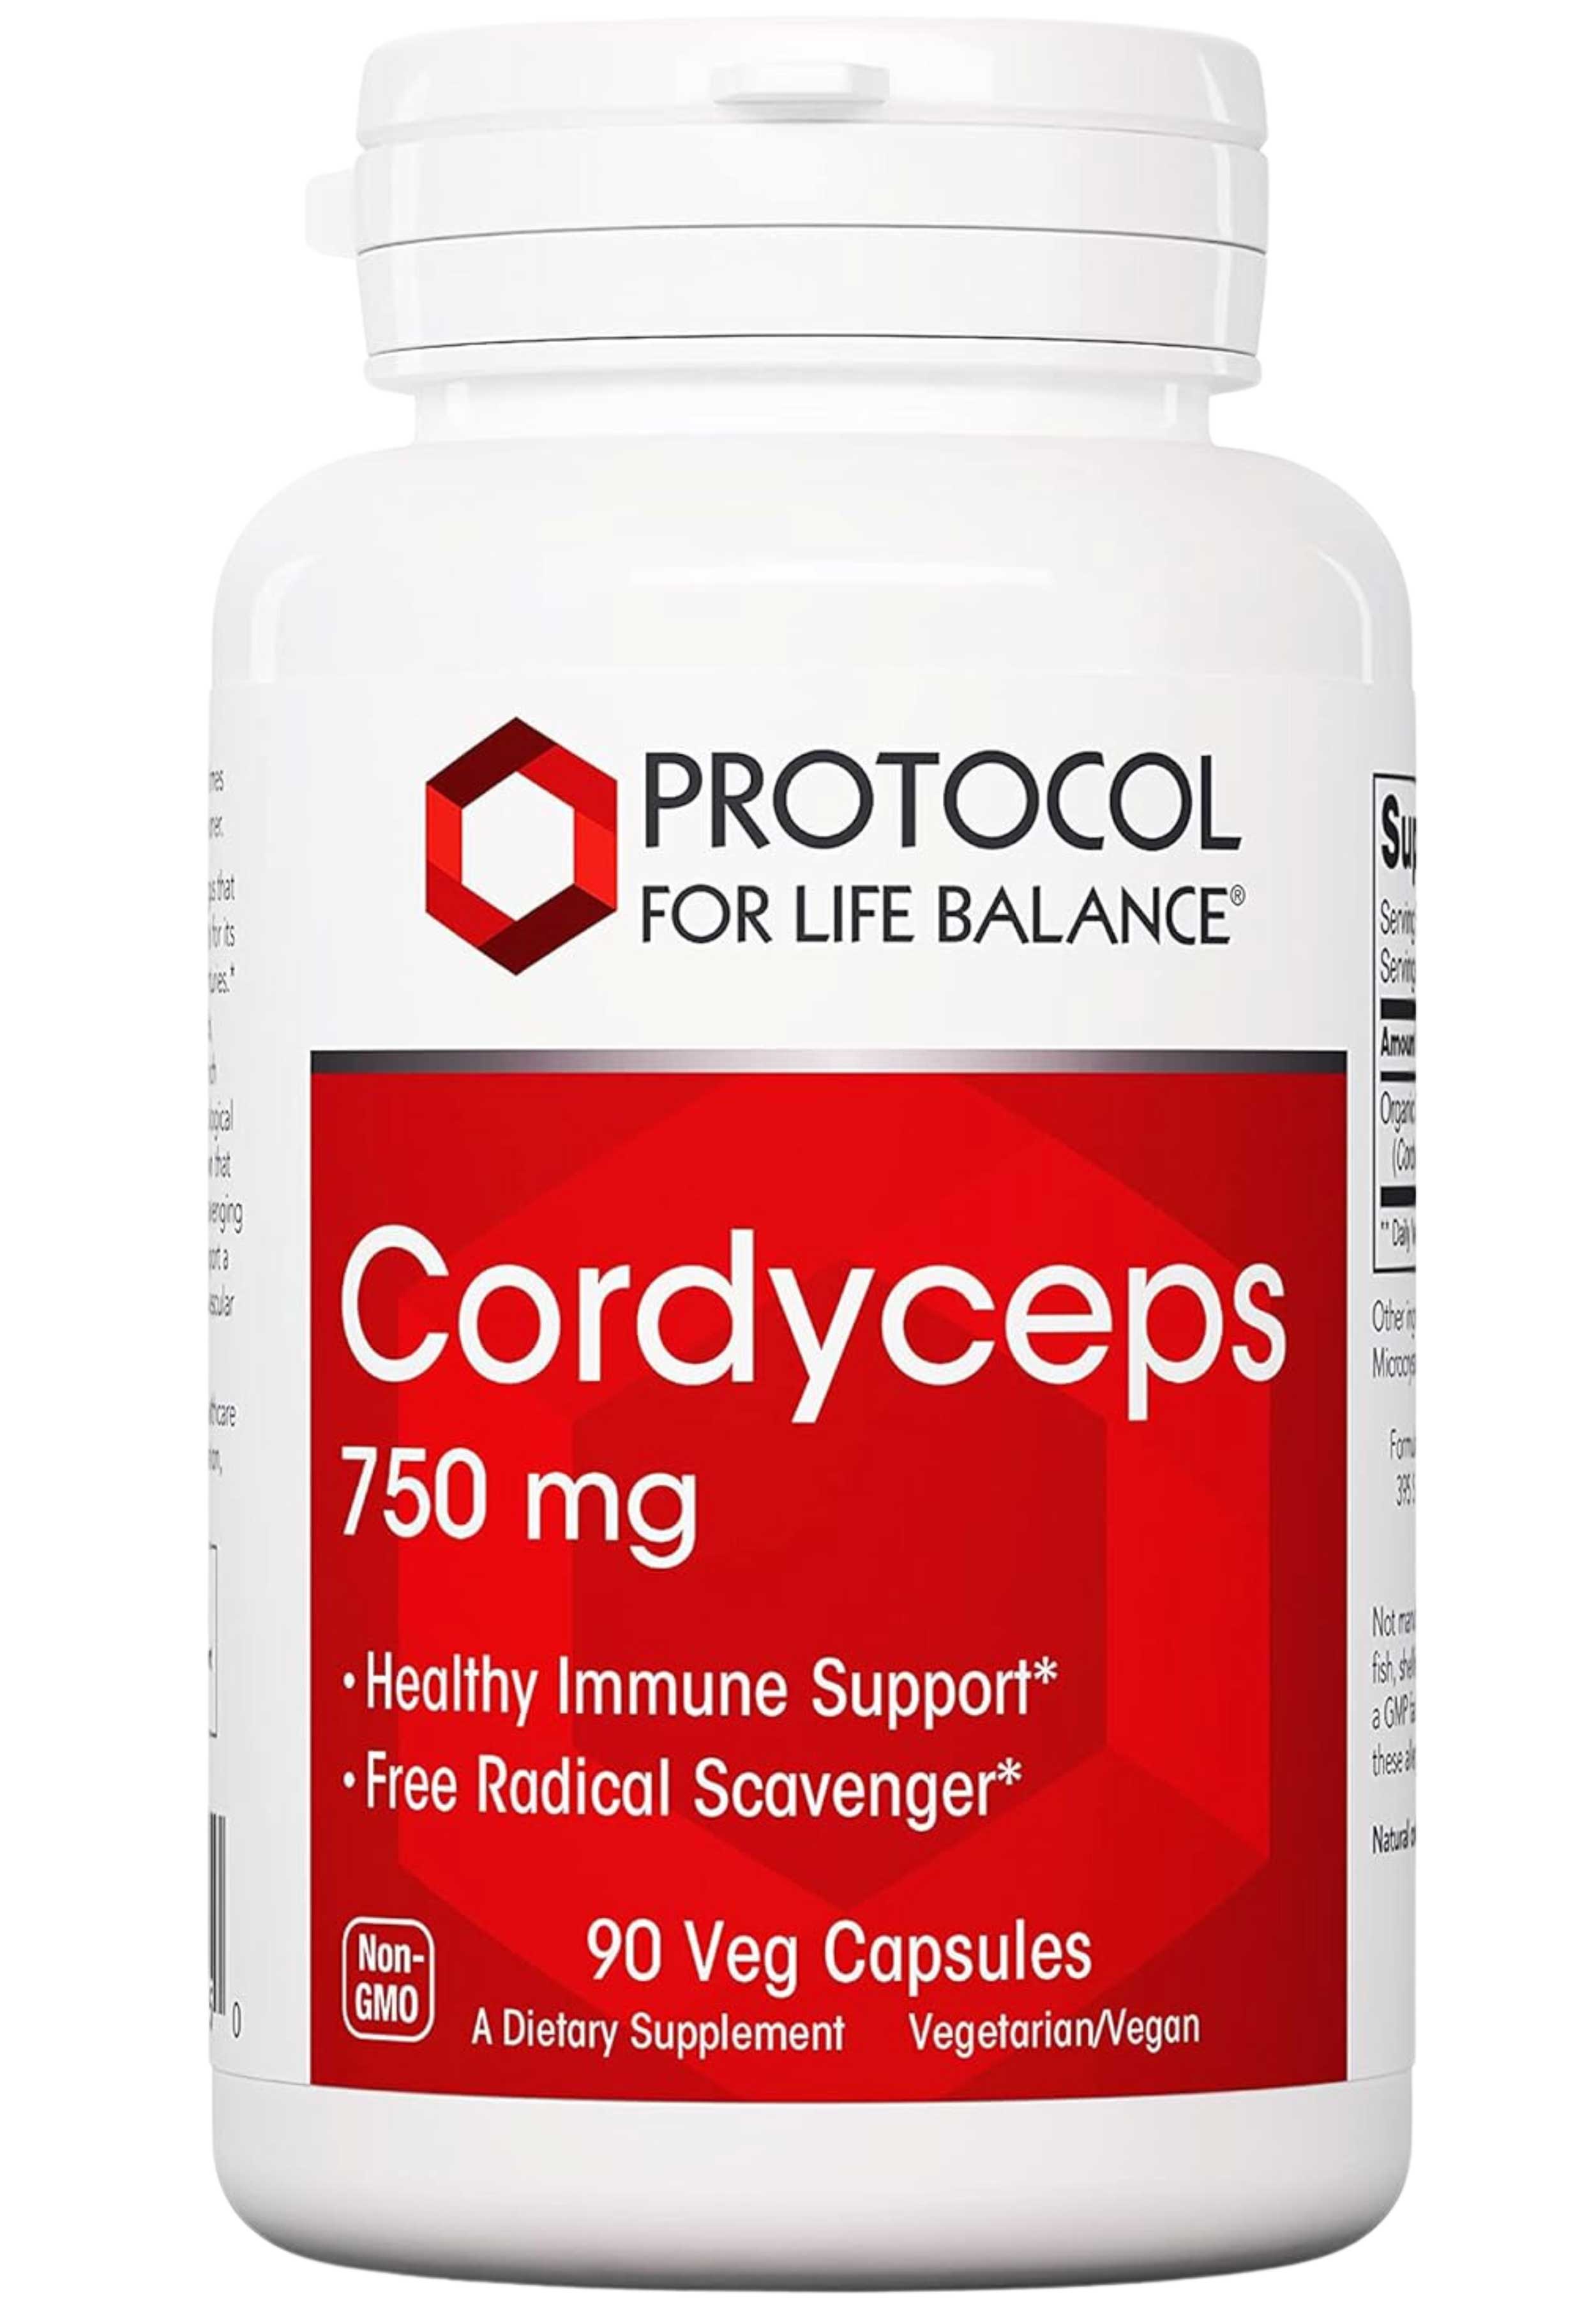 Protocol for Life Balance Cordyceps 750 mg